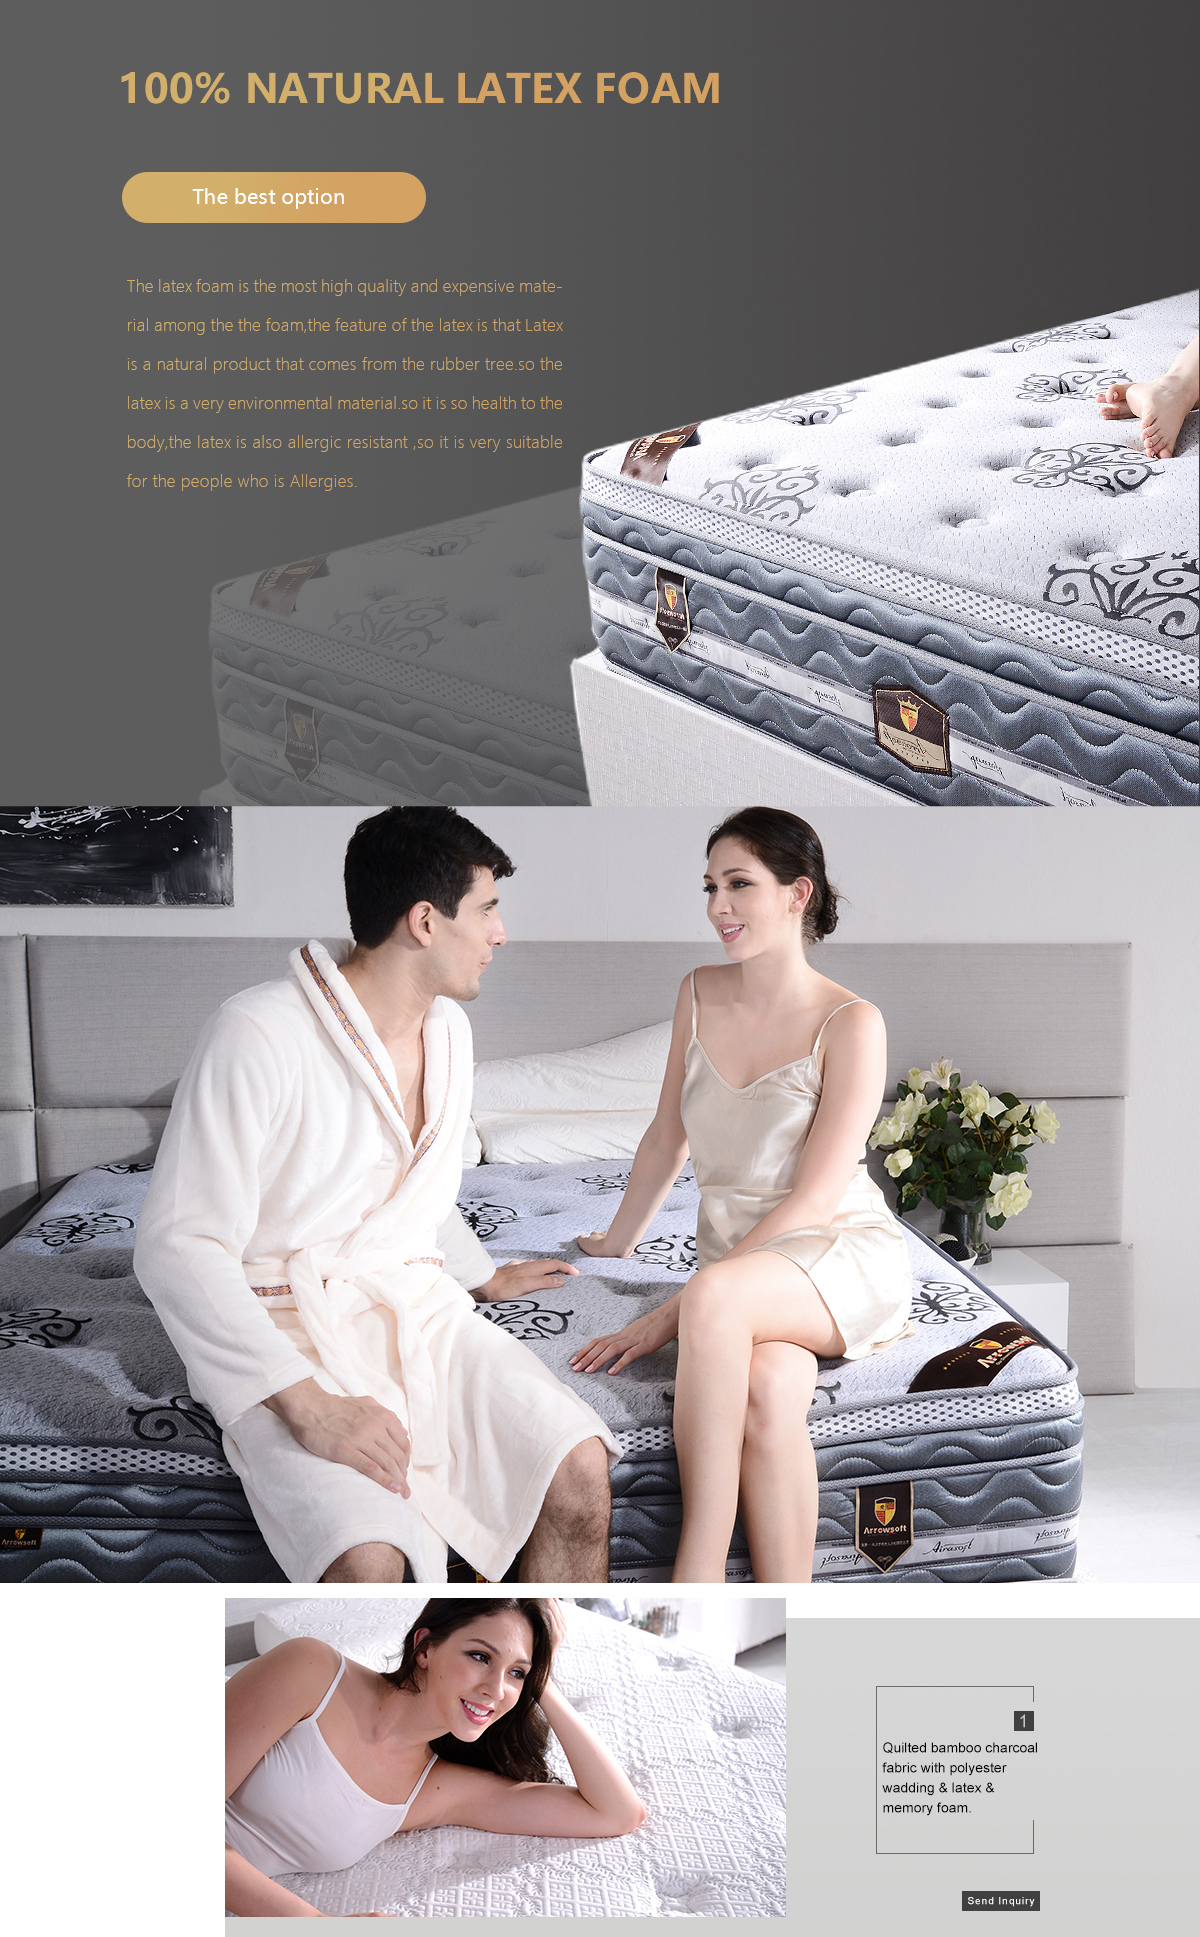 New mattress design from Arrowsoft mattress